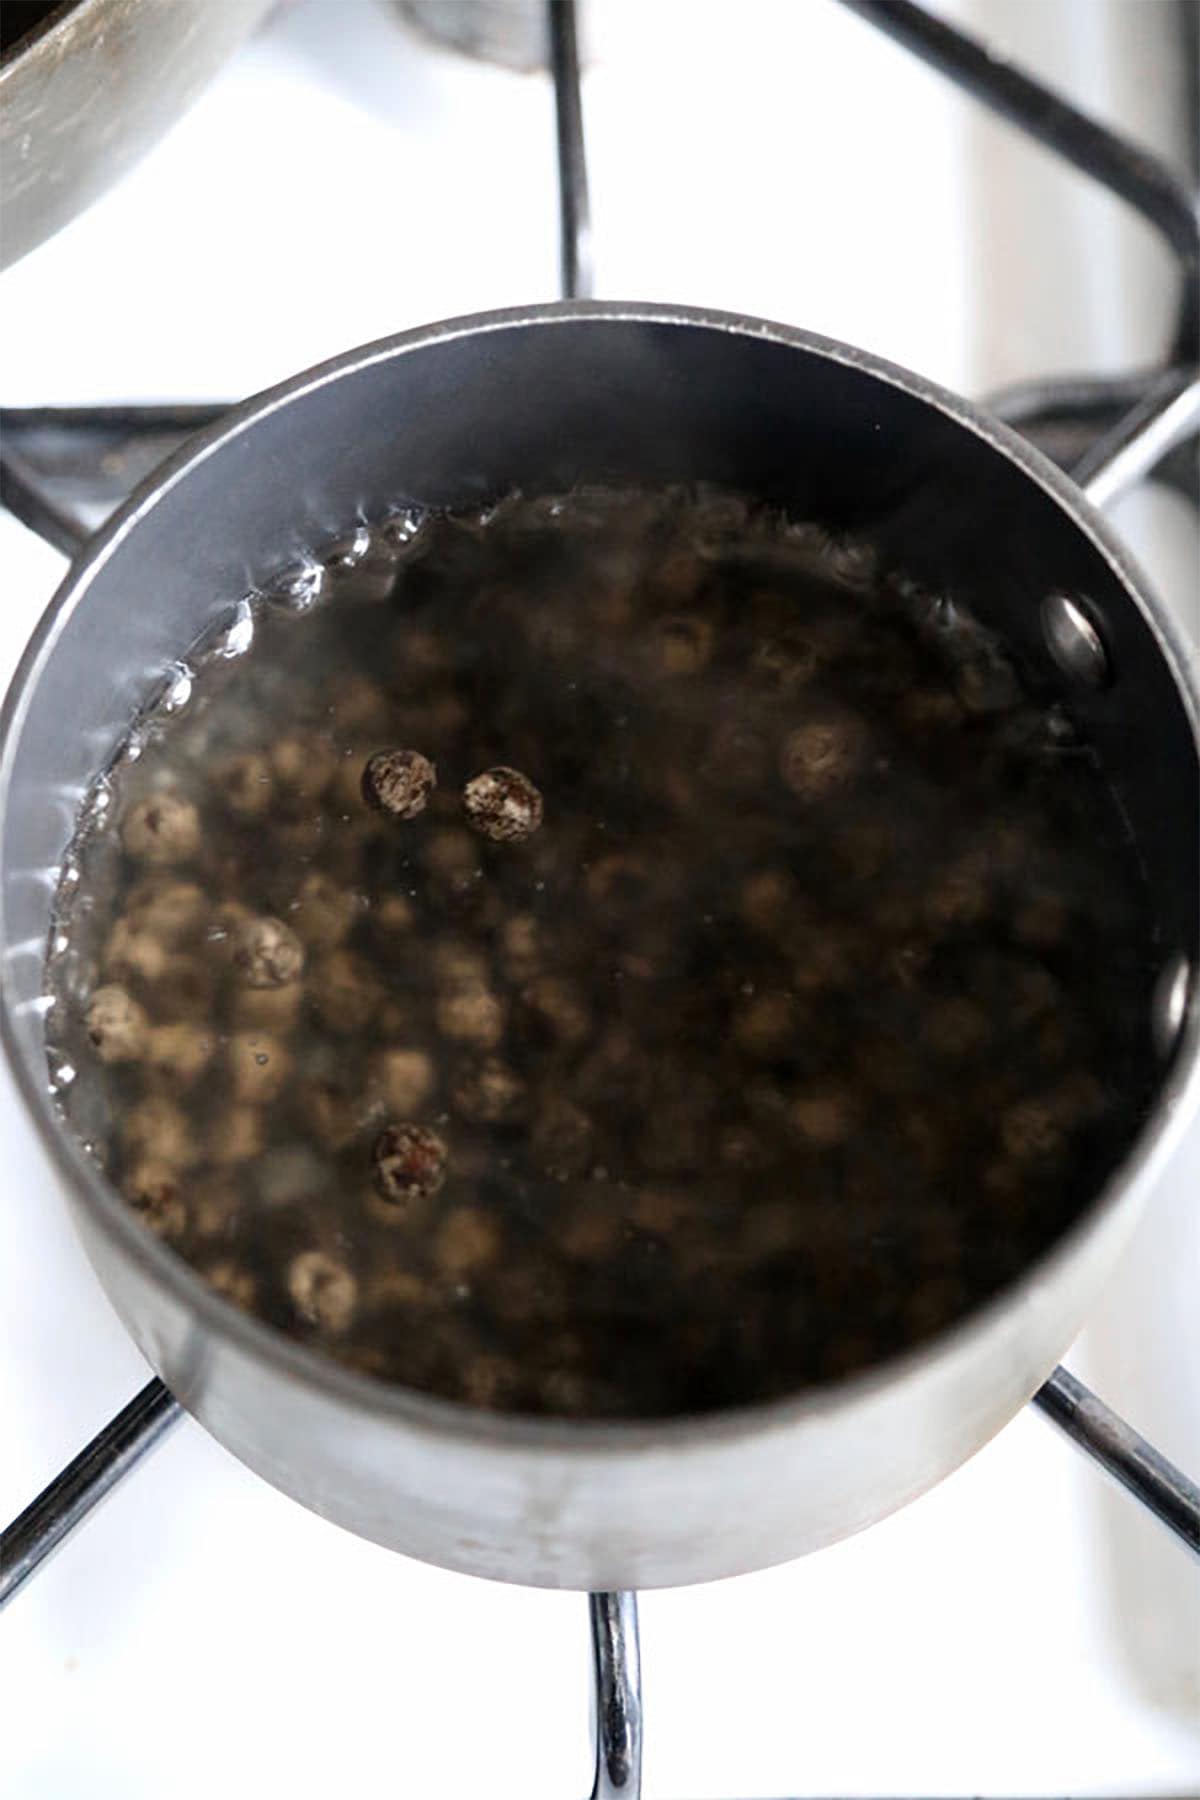 Tapioca pearls in water (boba)